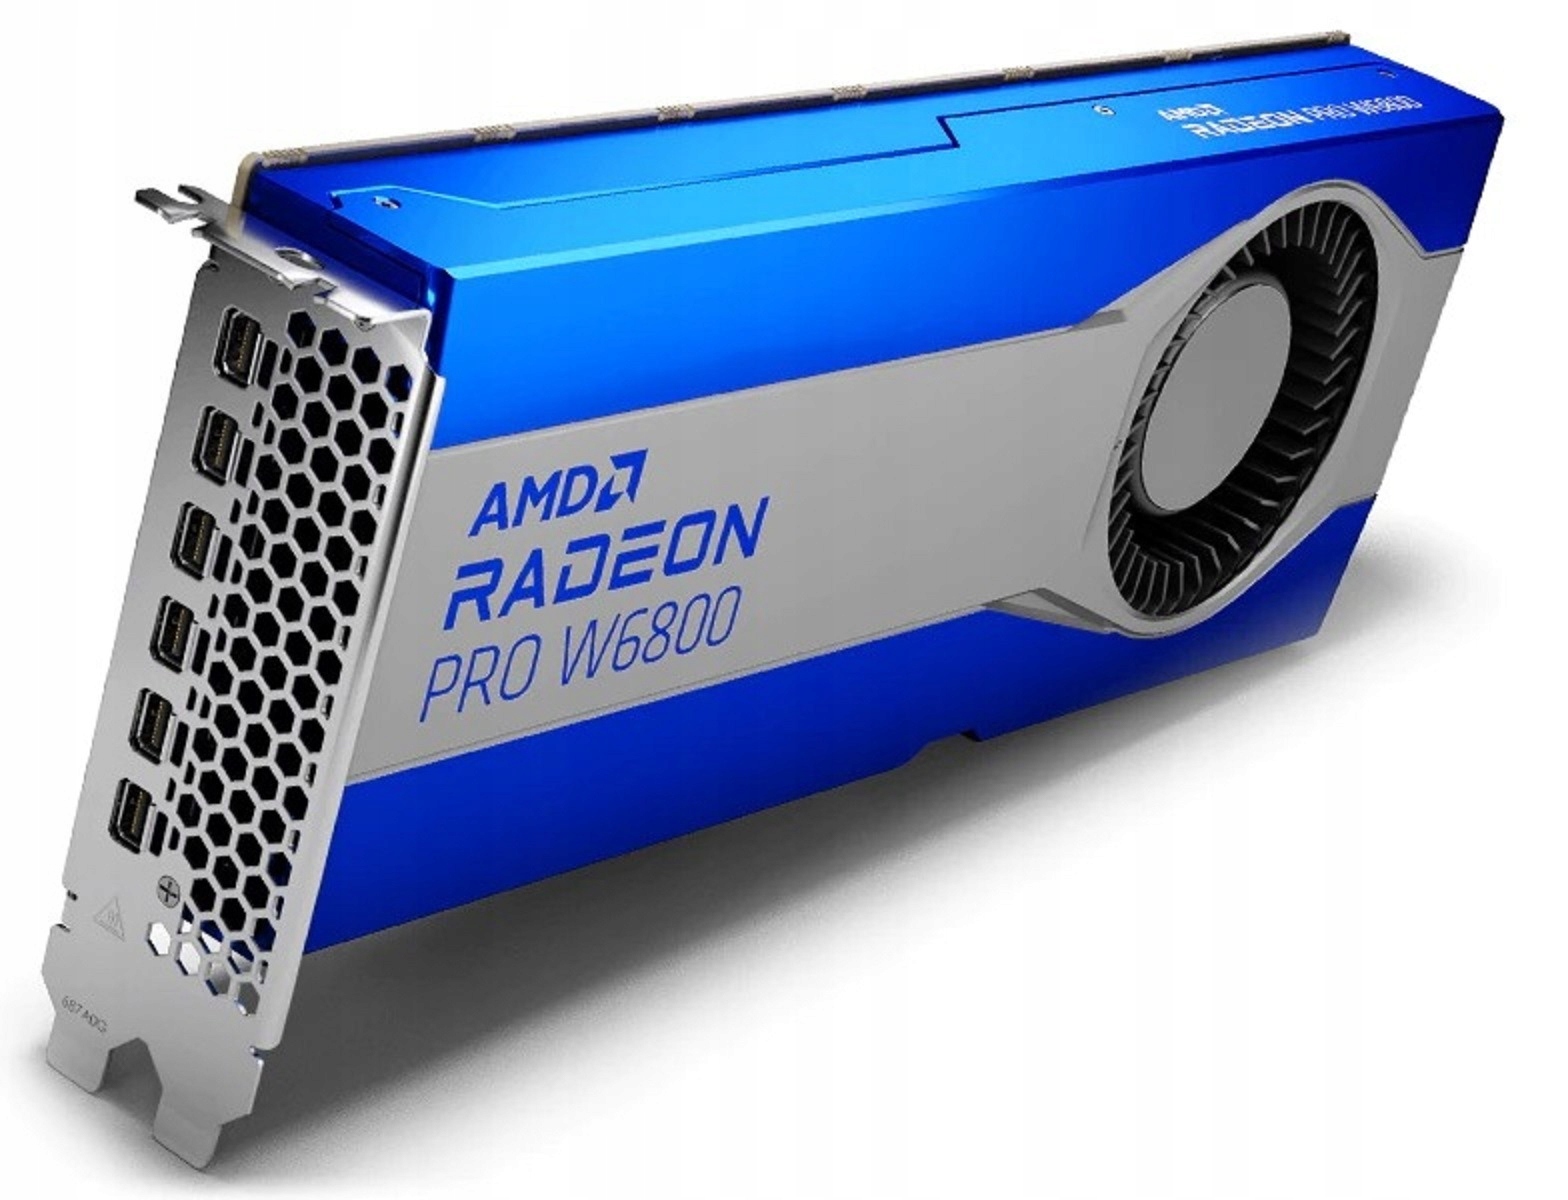 Відеокарта AMD Radeon Pro W6800 32GB вага продукту з упаковкою 0.15 kg